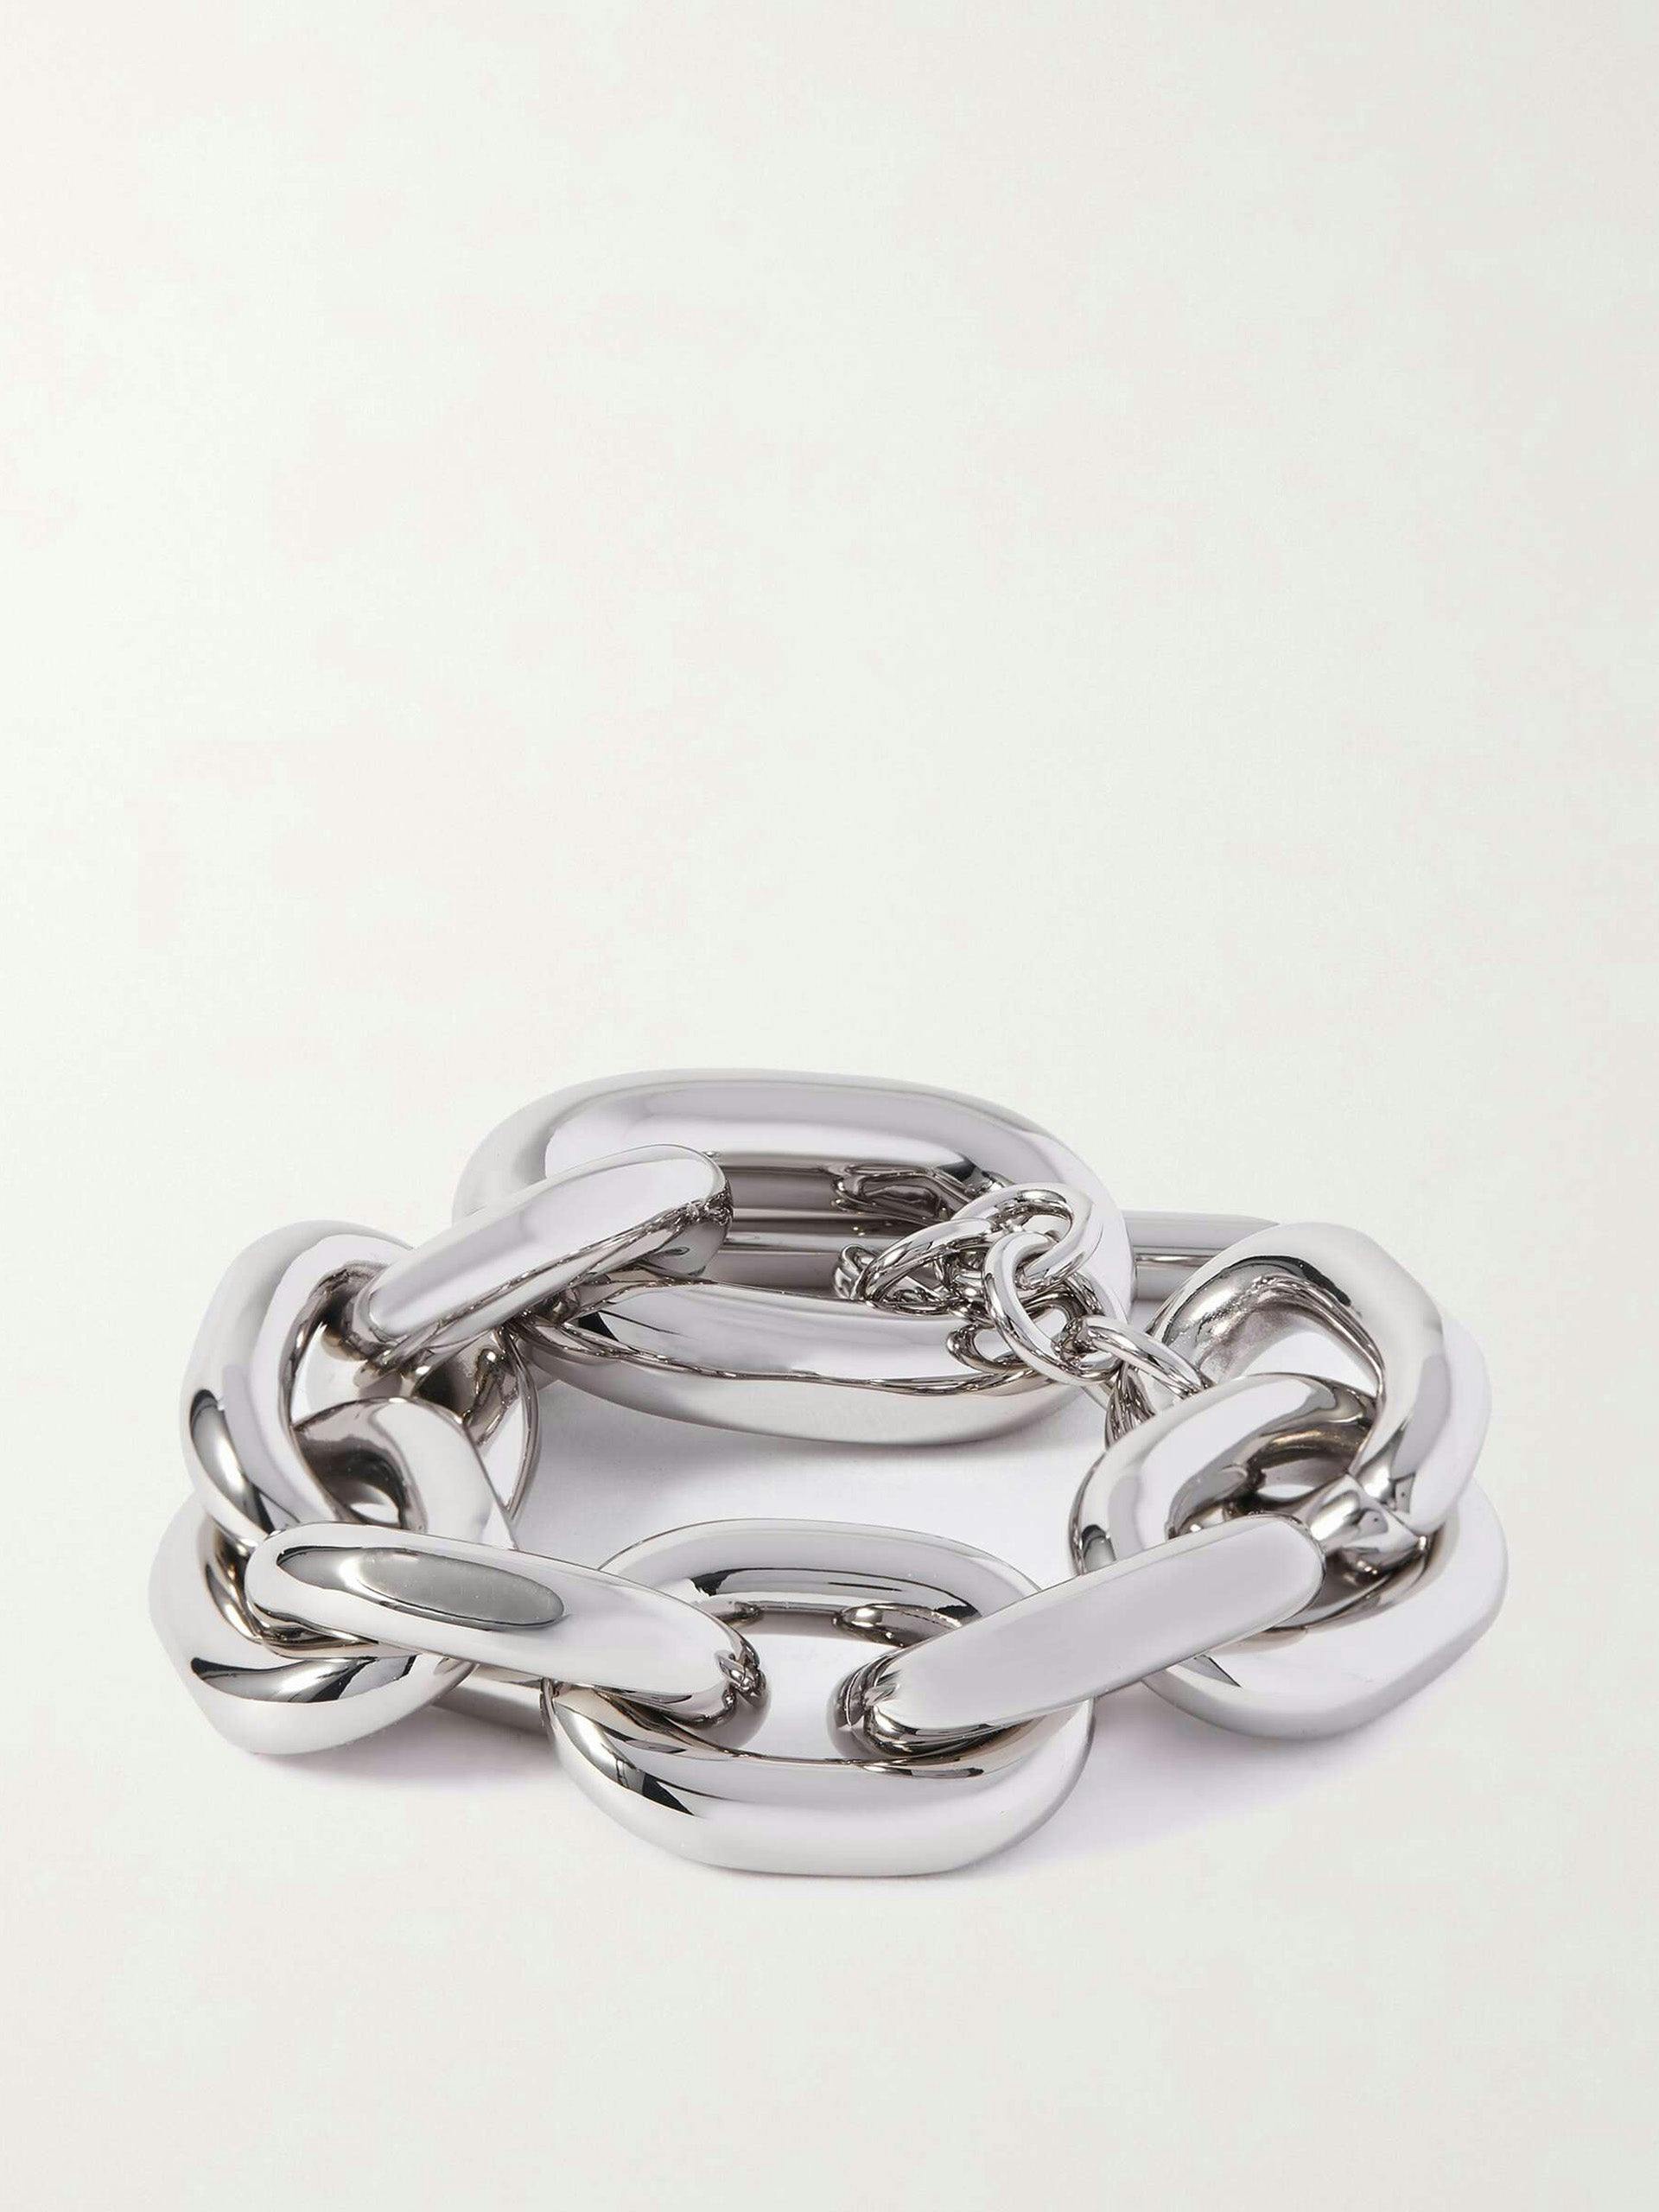 XL silver-tone bracelet